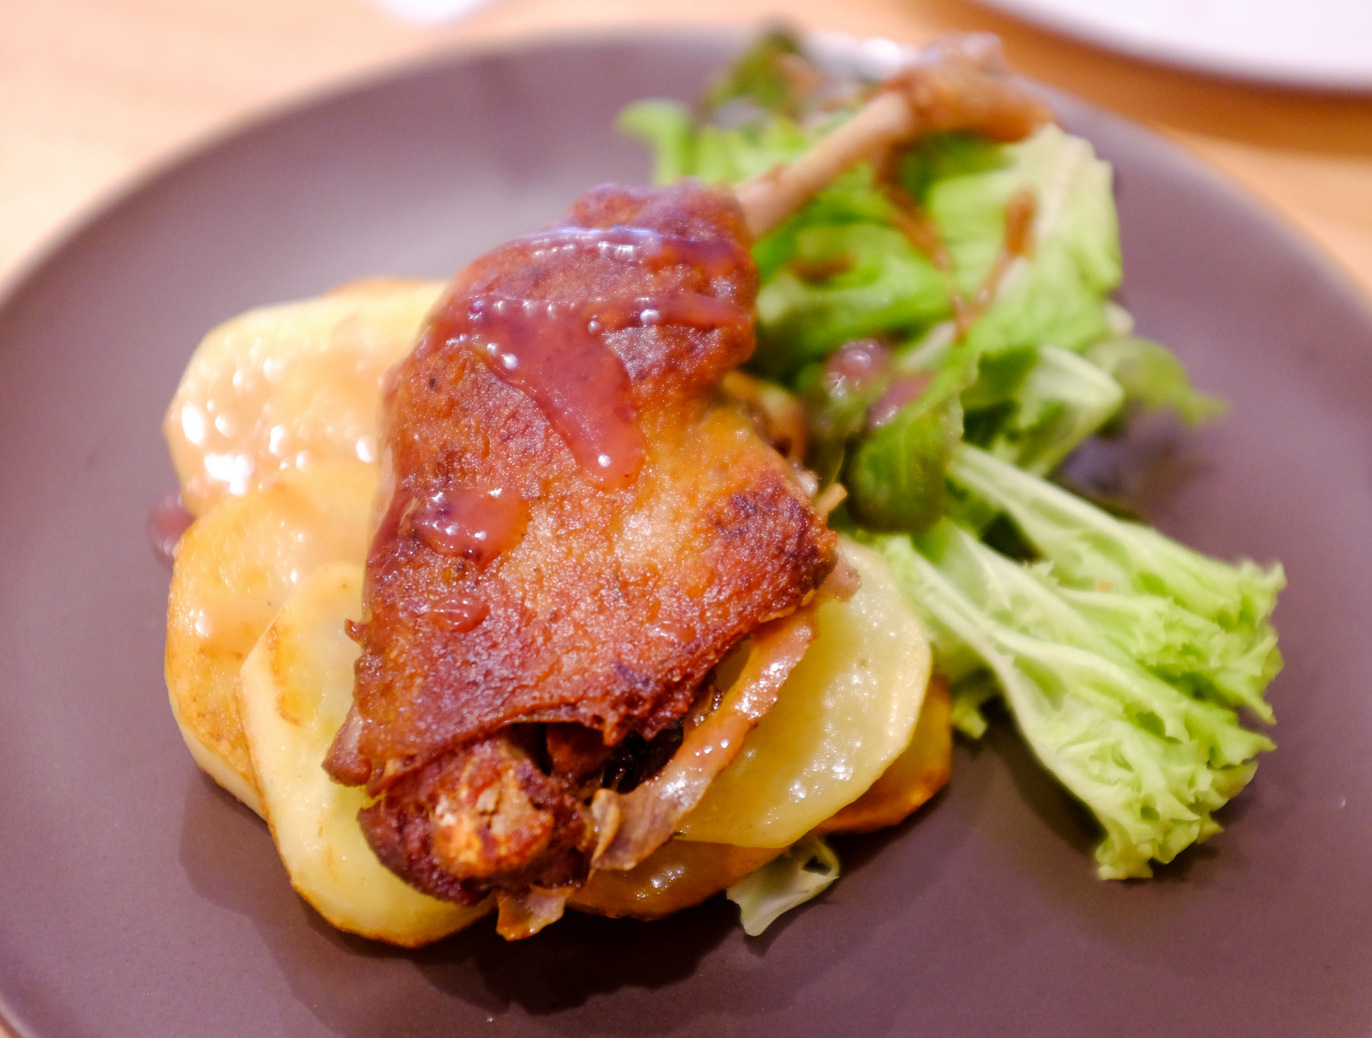 5. Chez Leoniel - grilled duck confit with potatoes